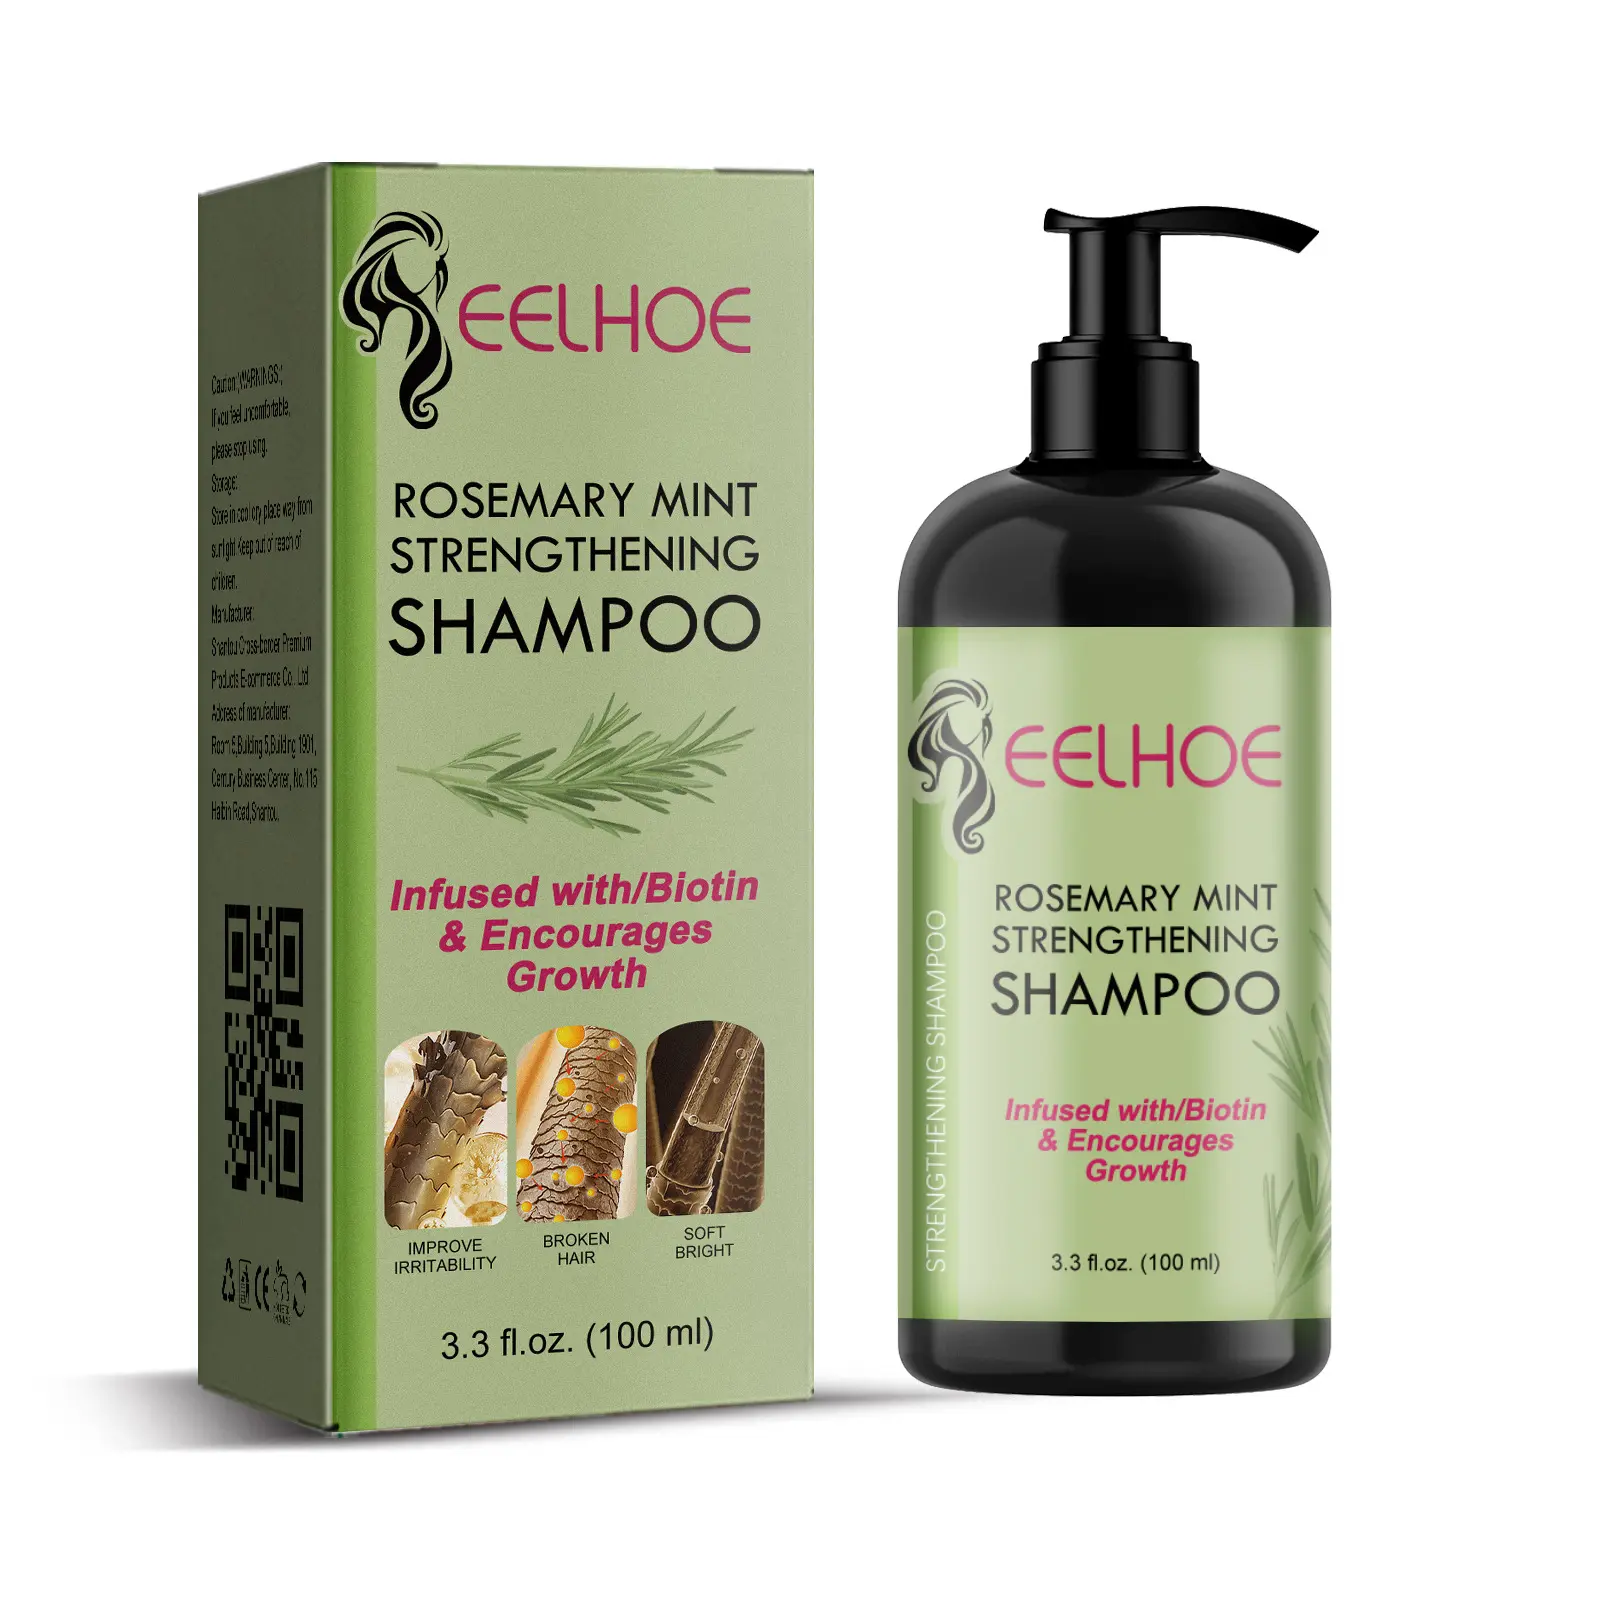 Shampoo originale che rafforza la menta Shampoo infuso con biotina, purifica e aiuta a rafforzare i capelli deboli e fragili